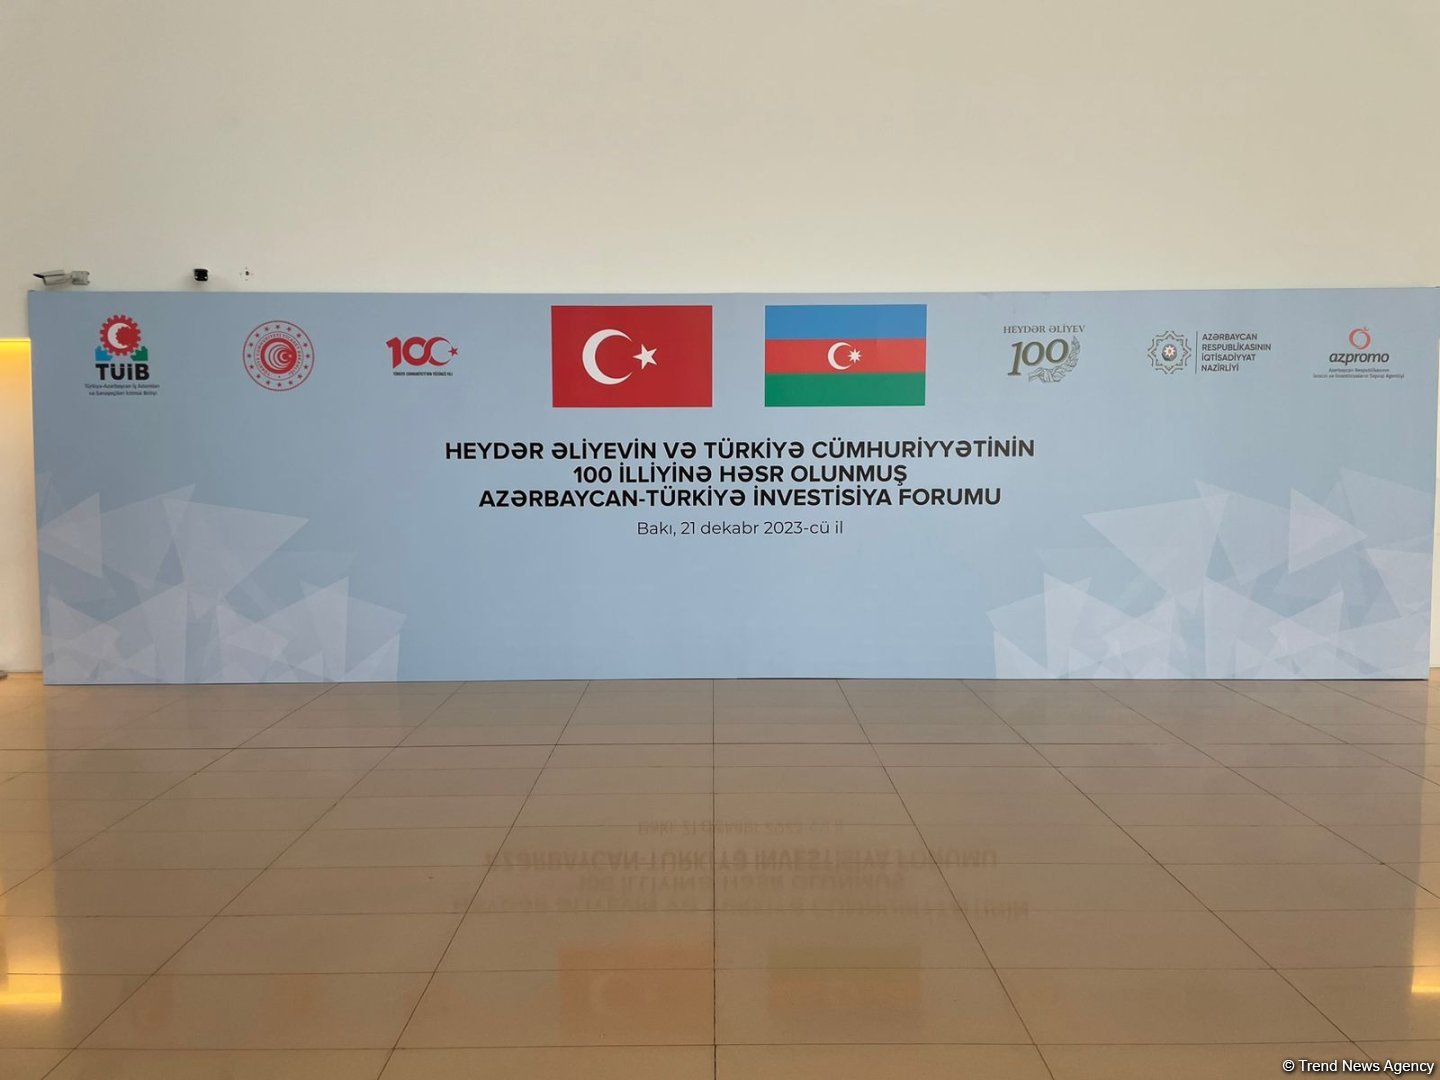 Bakıda Azərbaycan-Türkiyə İnvestisiya Forumu başlayıb